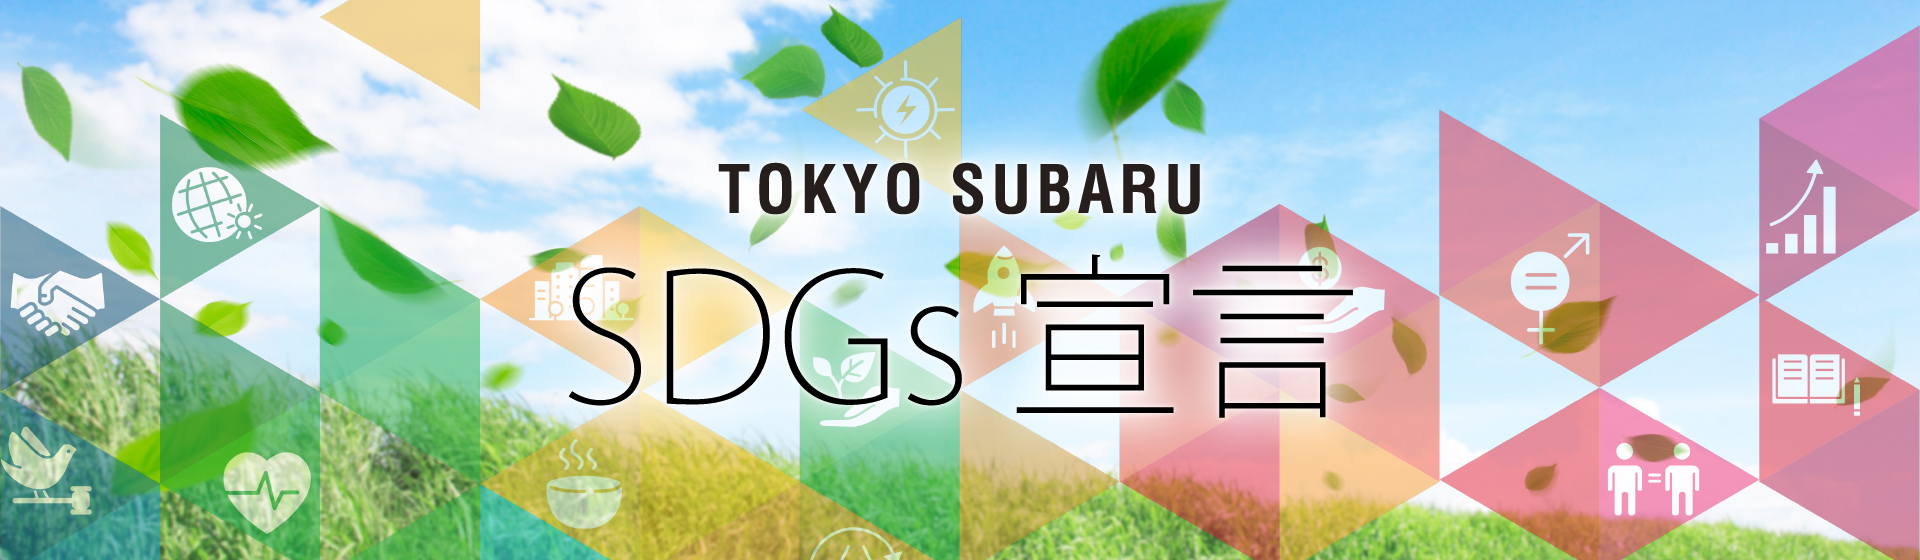 TOKYO SUBARU SDGs宣言